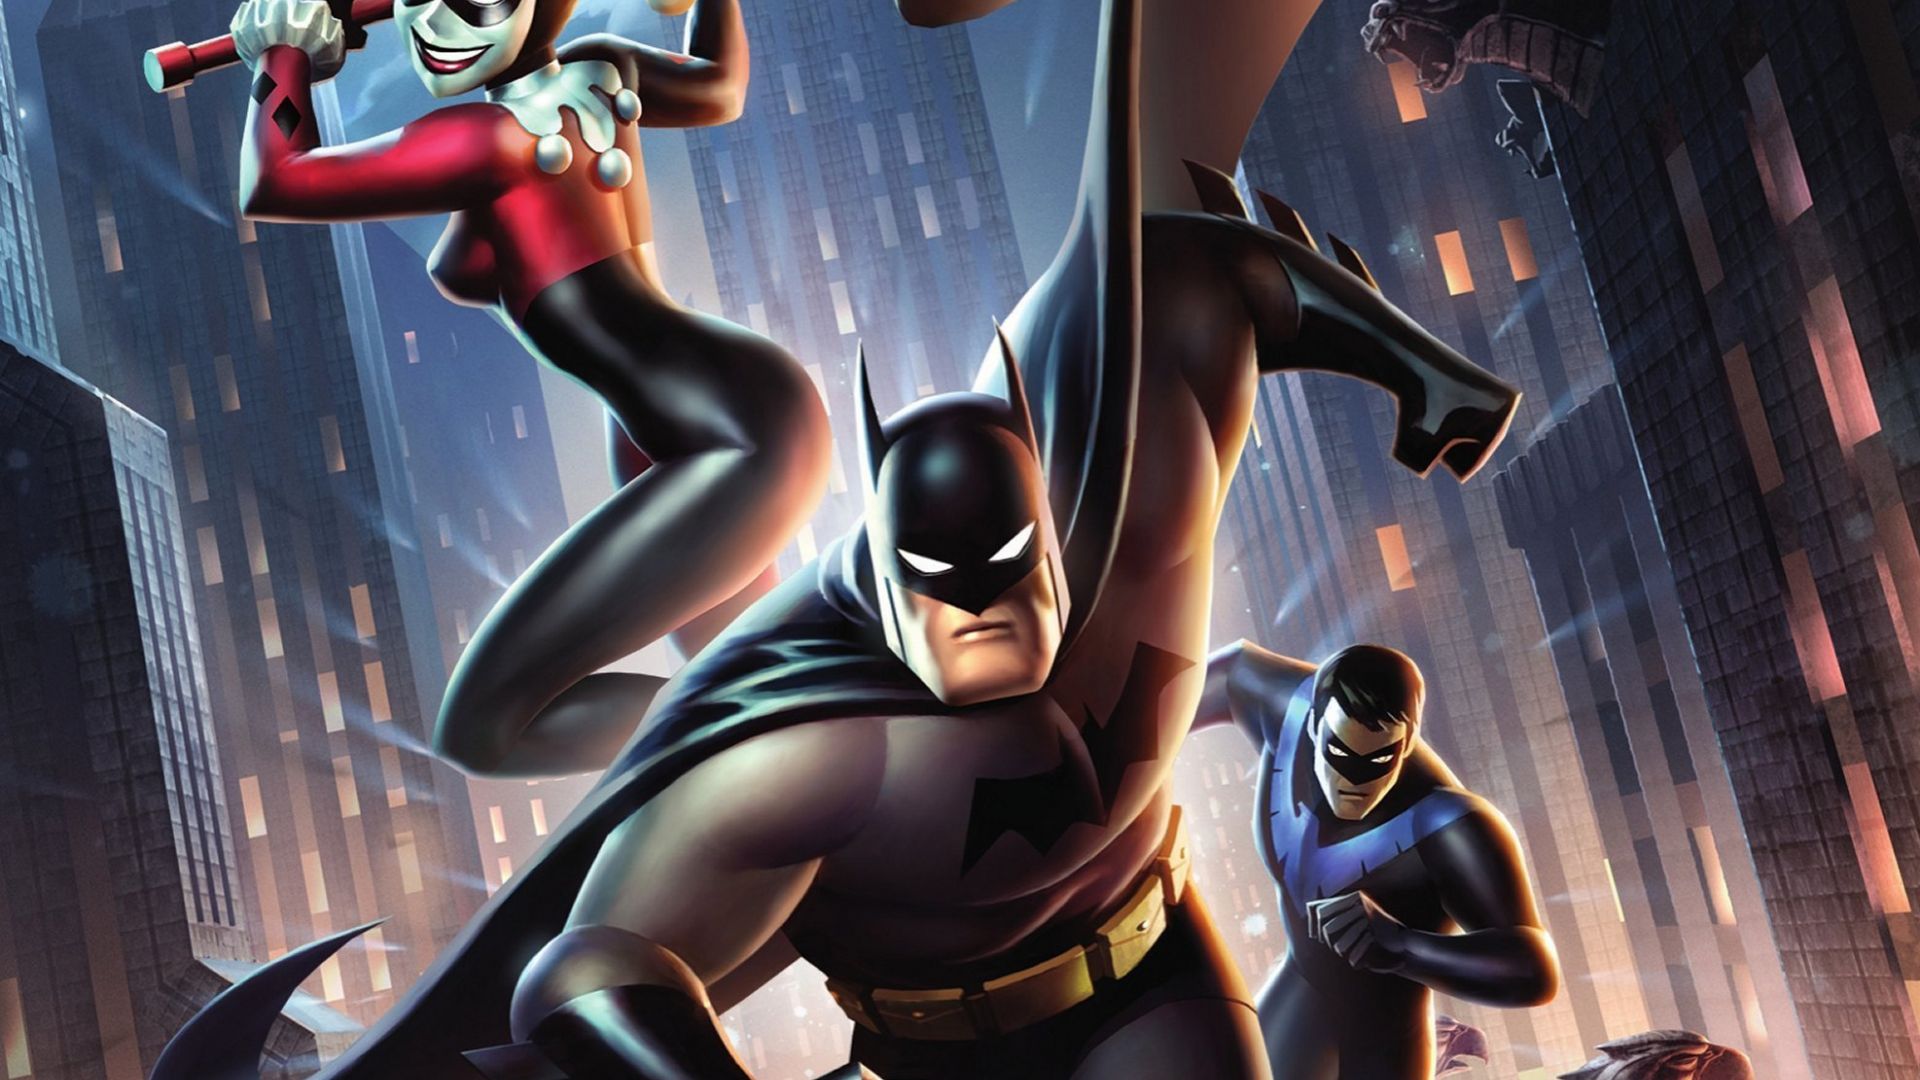 Wallpaper Batman and Harley Quinn, dc comics